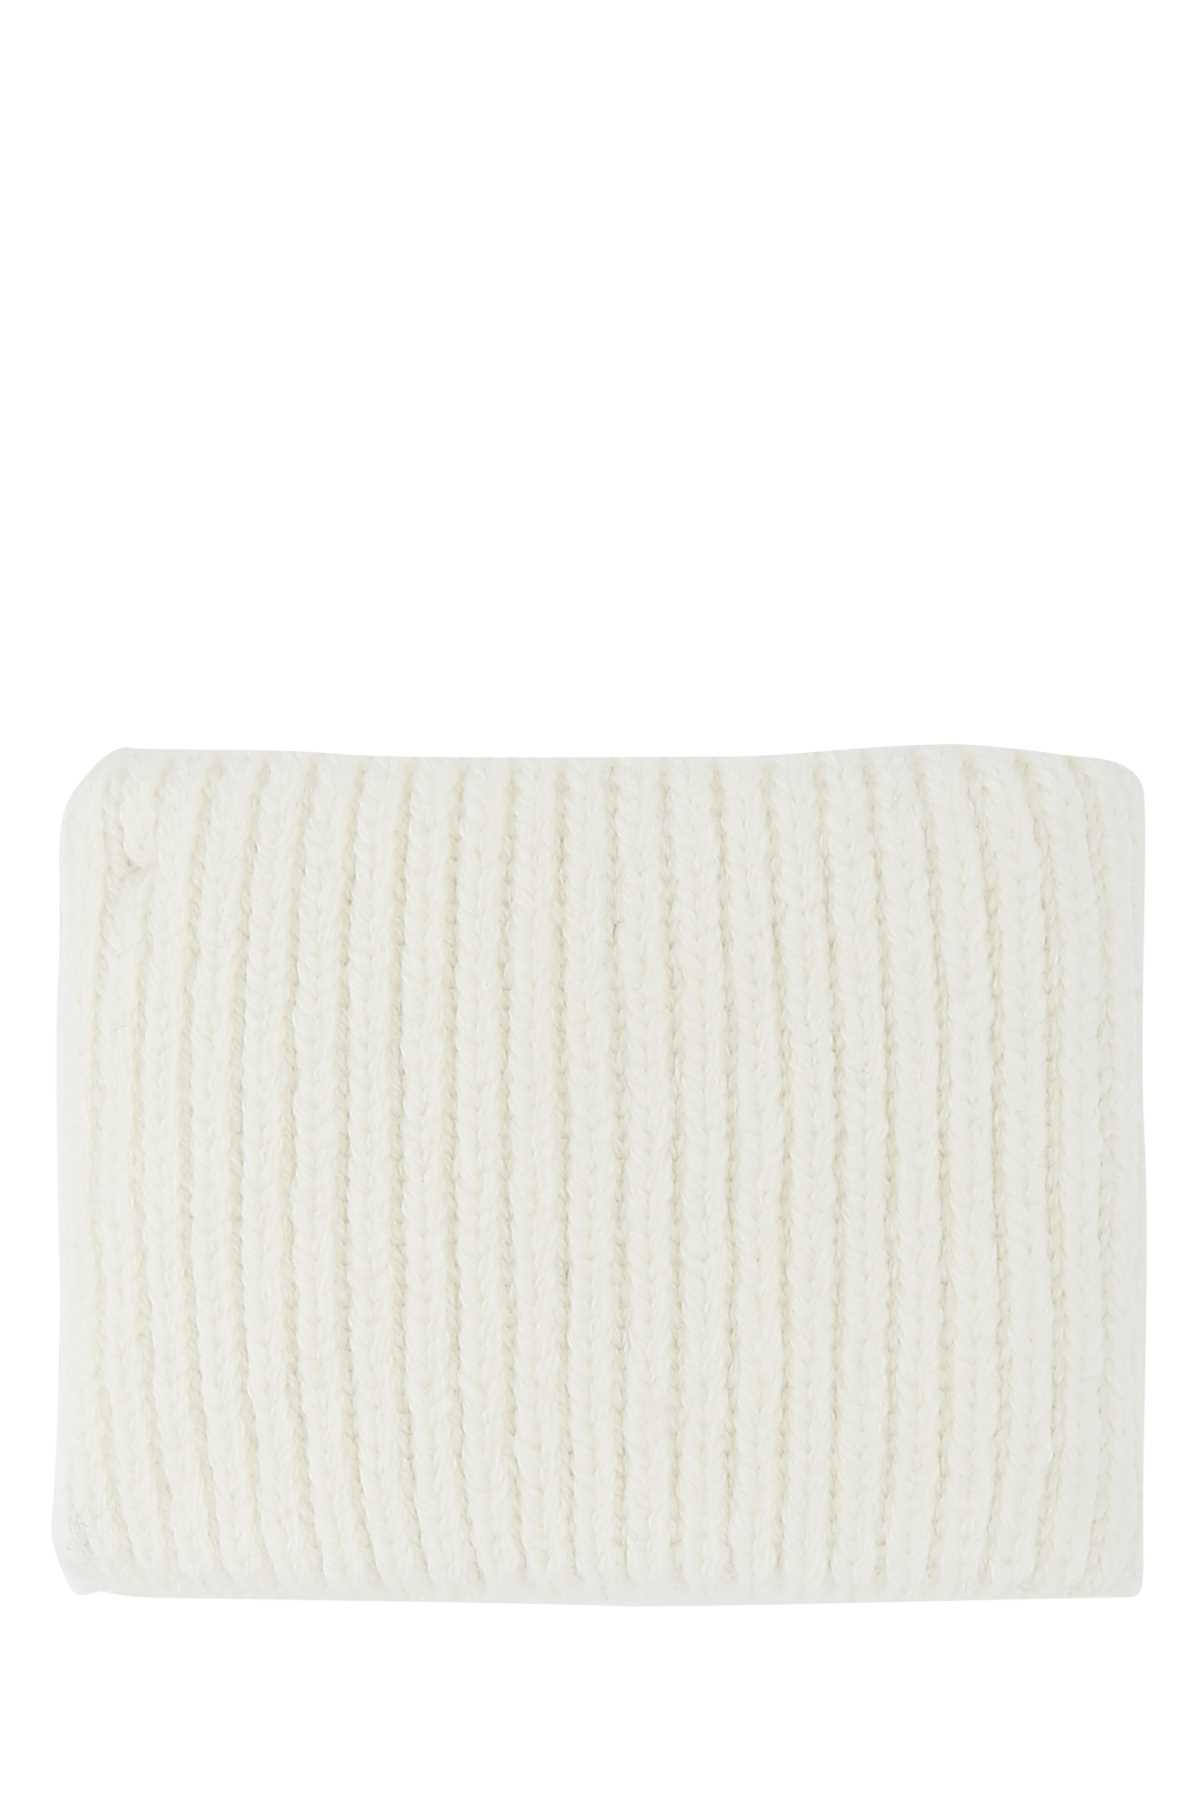 Prada White Stretch Wool Blend Cuff In F0009